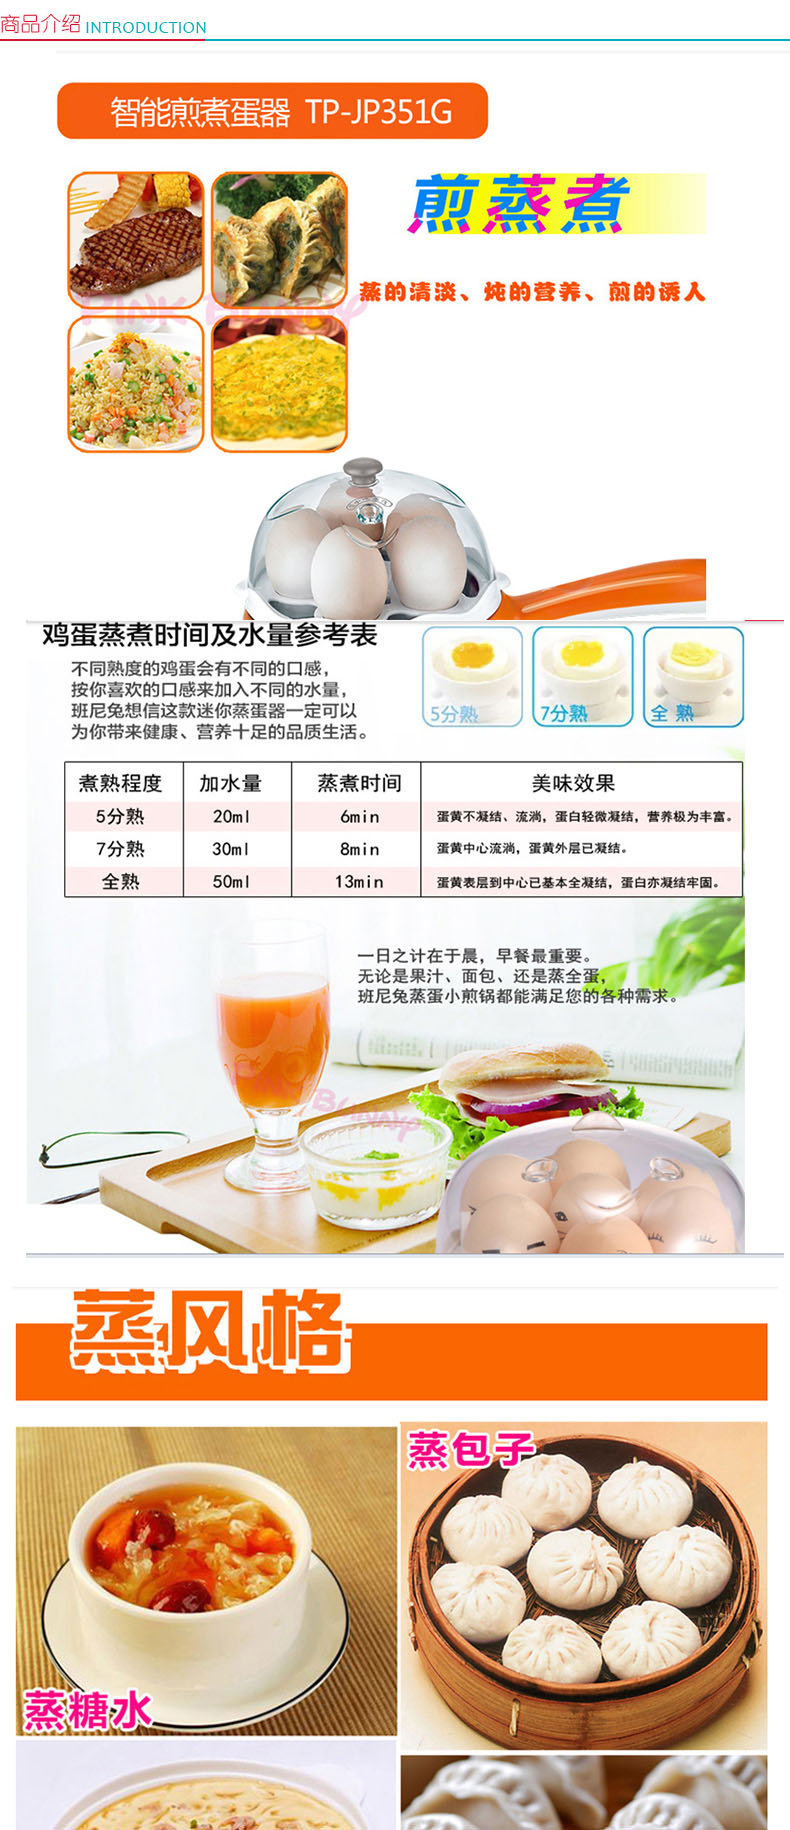 TCL 智能煎煮蛋器 TP-JP351G 5个鸡蛋 